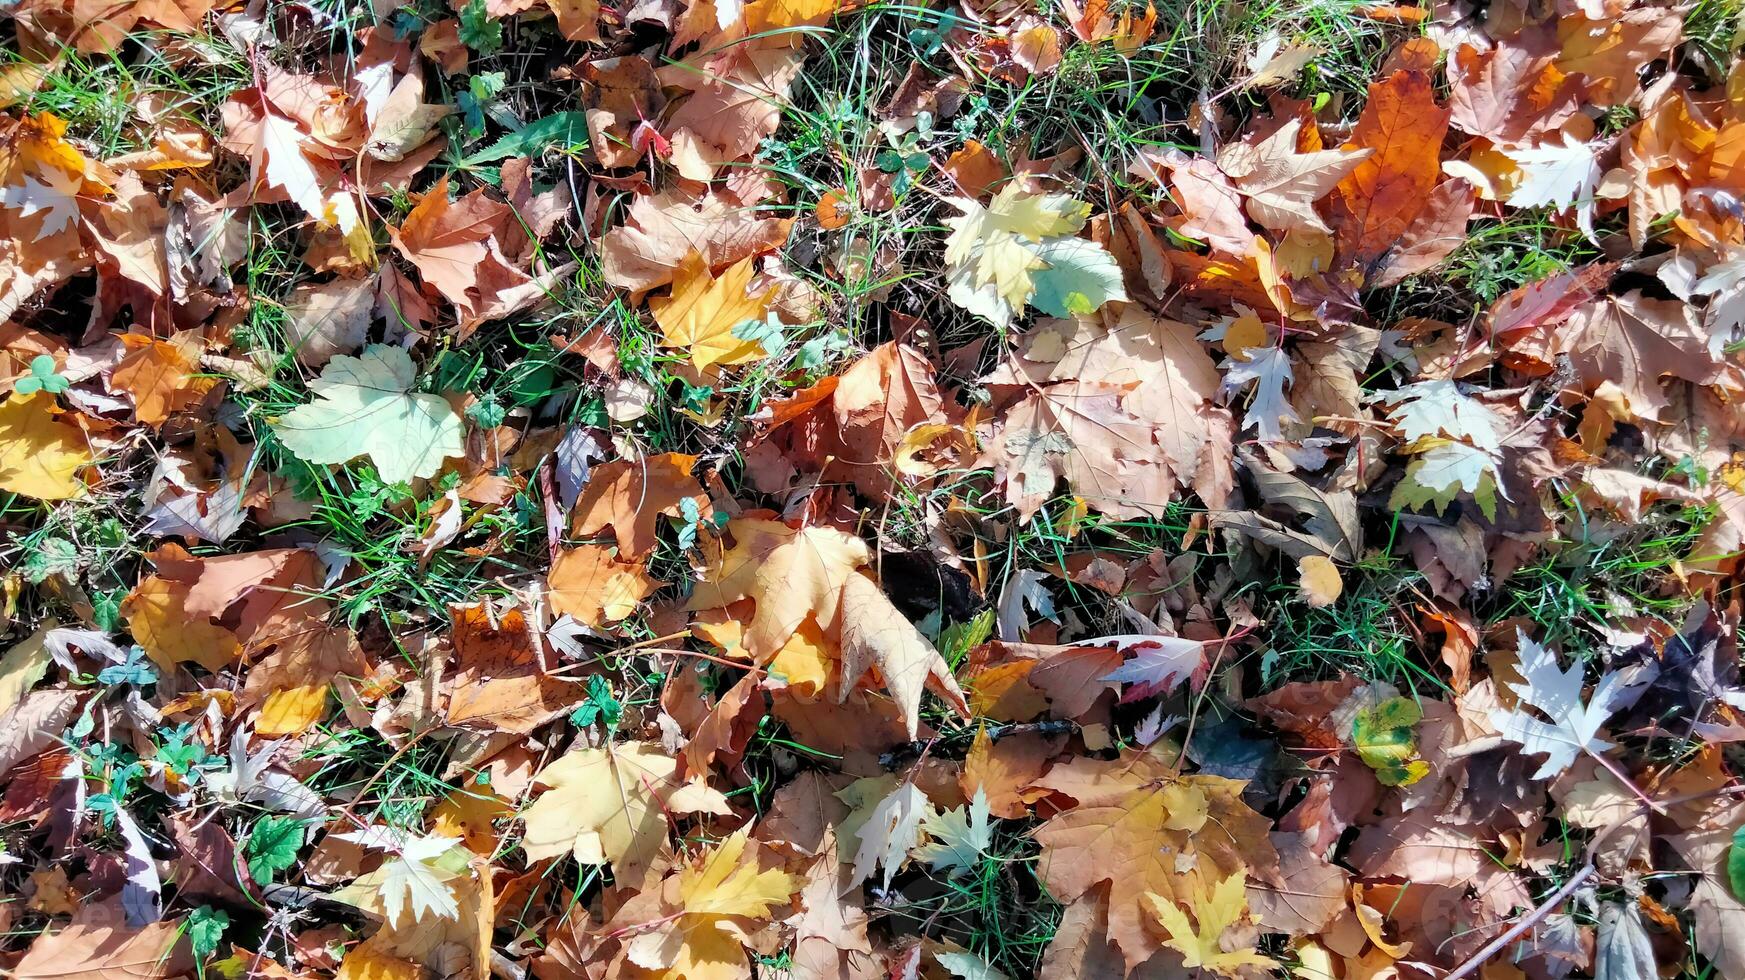 Herbst. mehrfarbig Ahorn Blätter Lüge auf das Gras. bunt Hintergrund Bild von gefallen Herbst Blätter perfekt zum saisonal verwenden foto